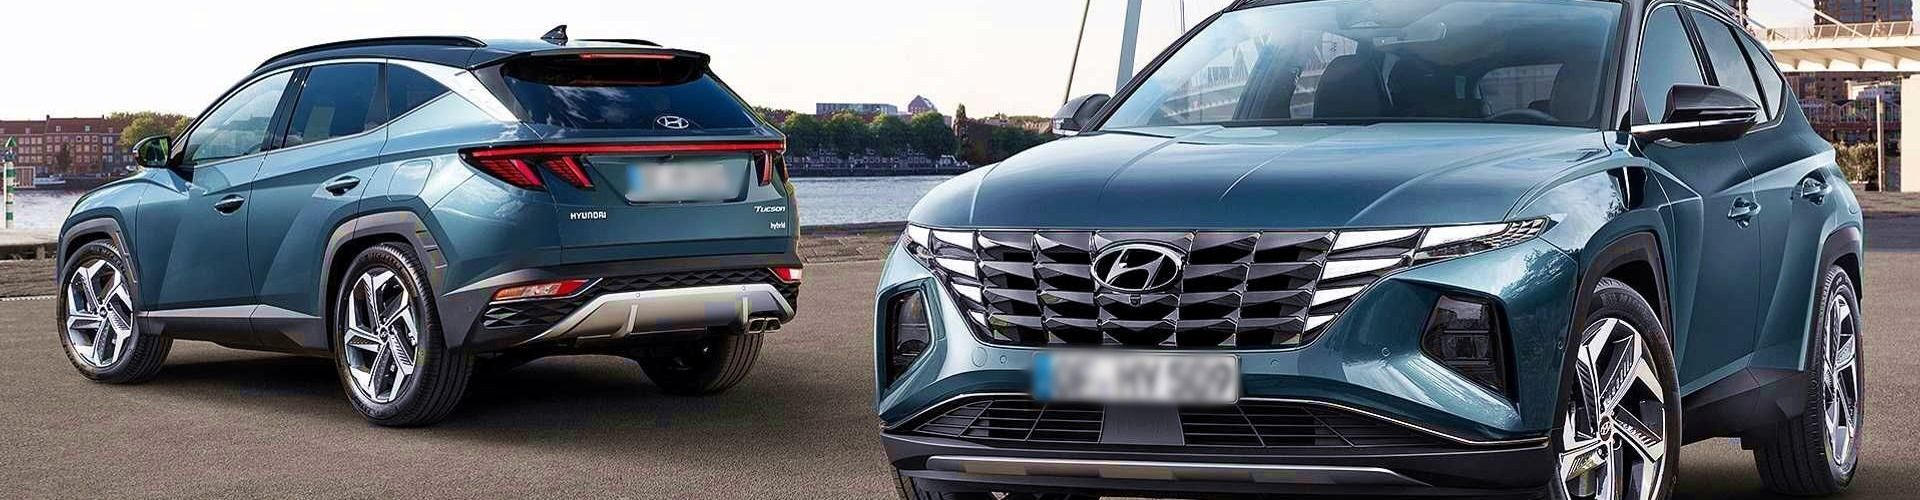 ¿Que Es Mejor Hyundai O Nissan?